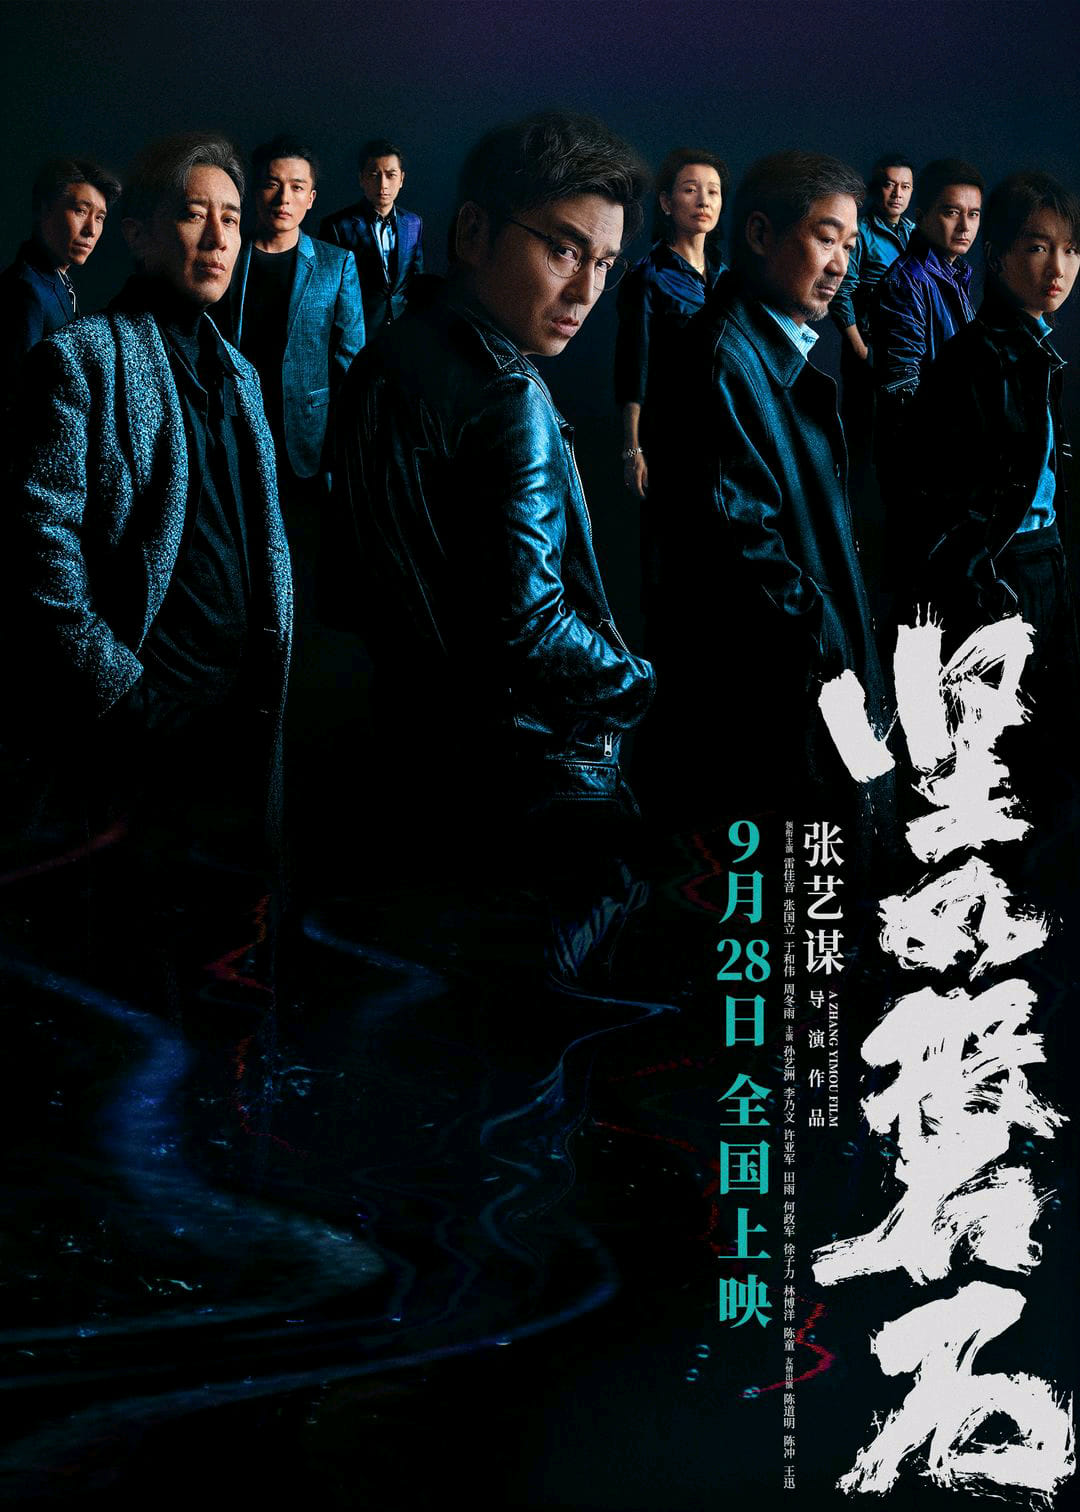 中国8天长假推波助澜 新电影横扫10亿票房